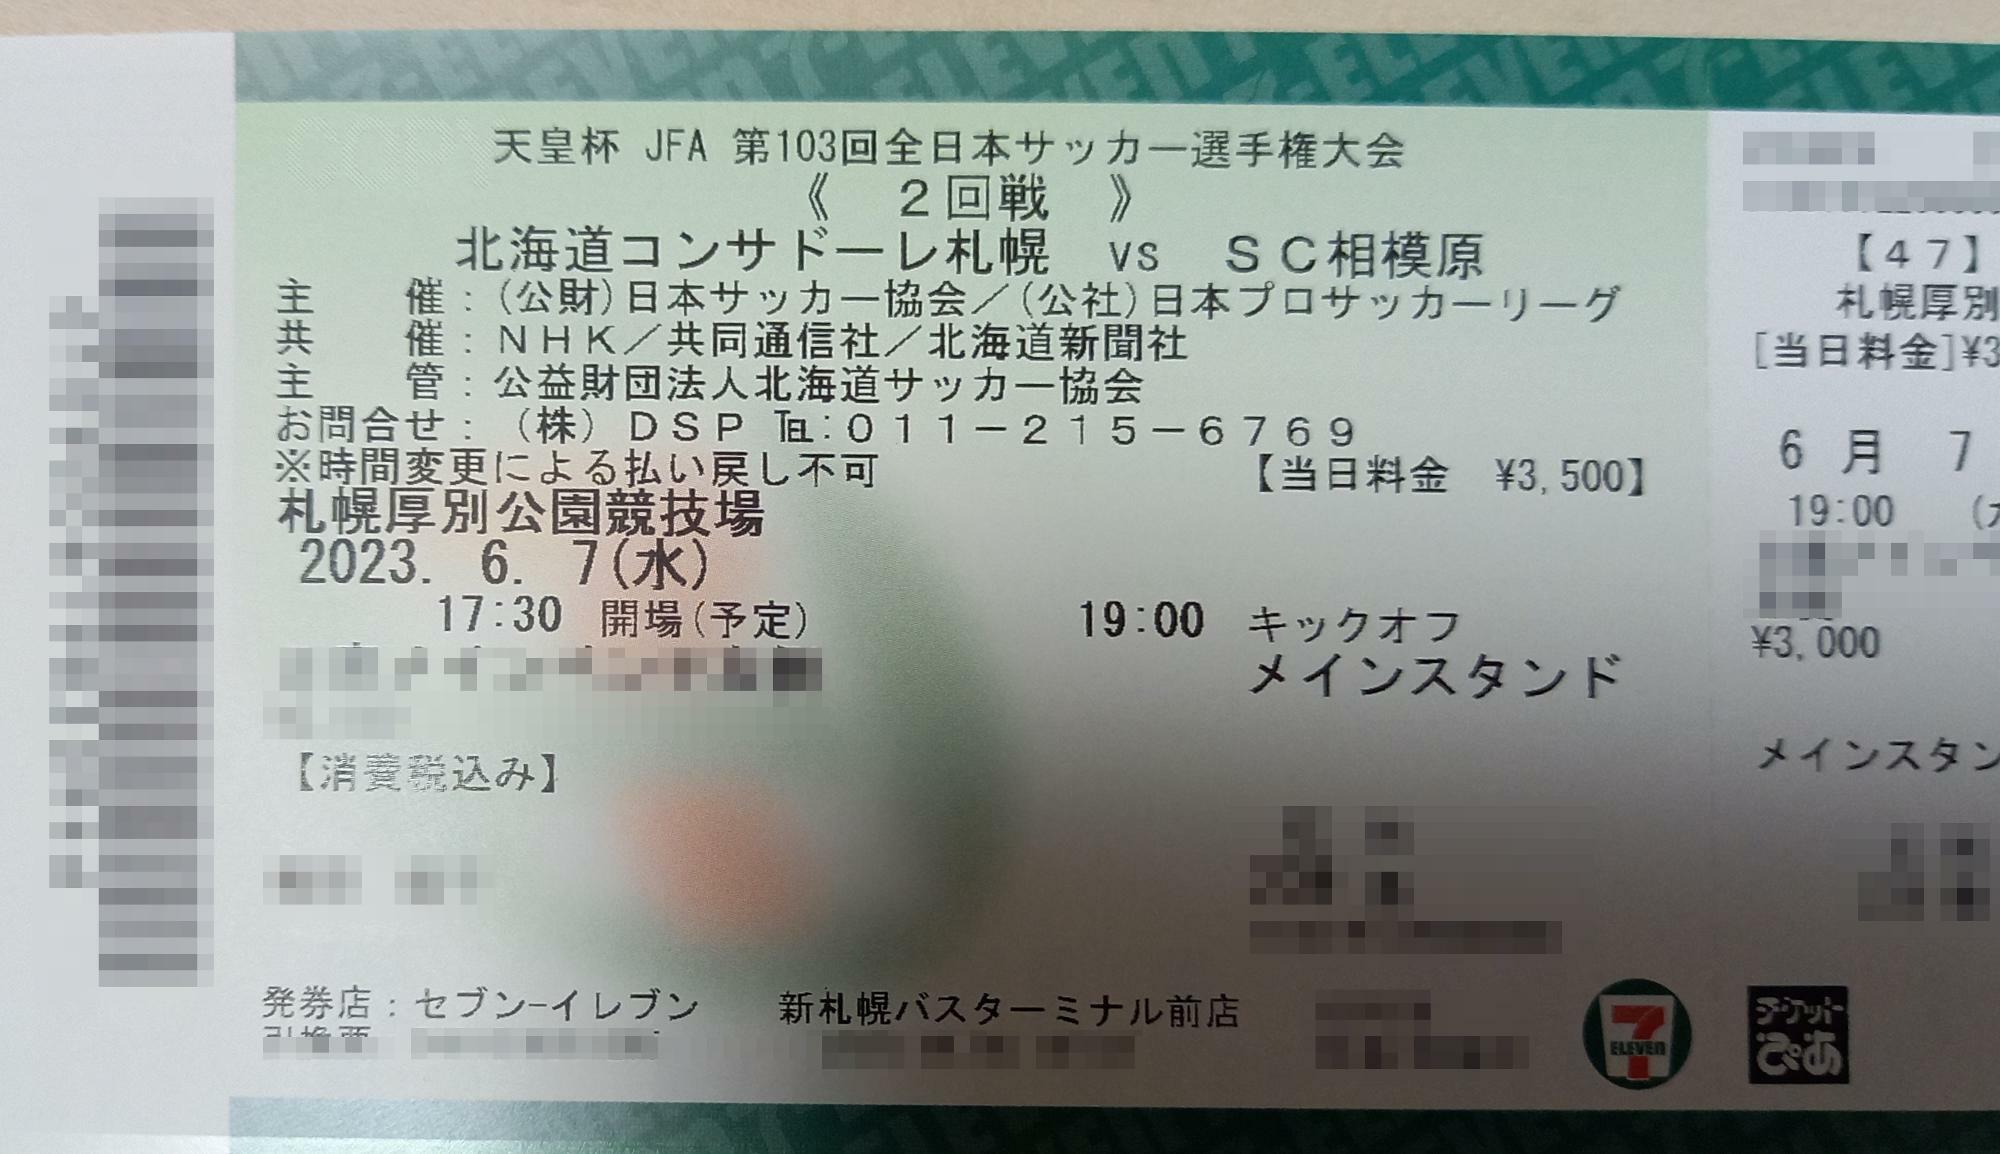 私はS席3000円の席を購入しました。当日は3500円になるようです。